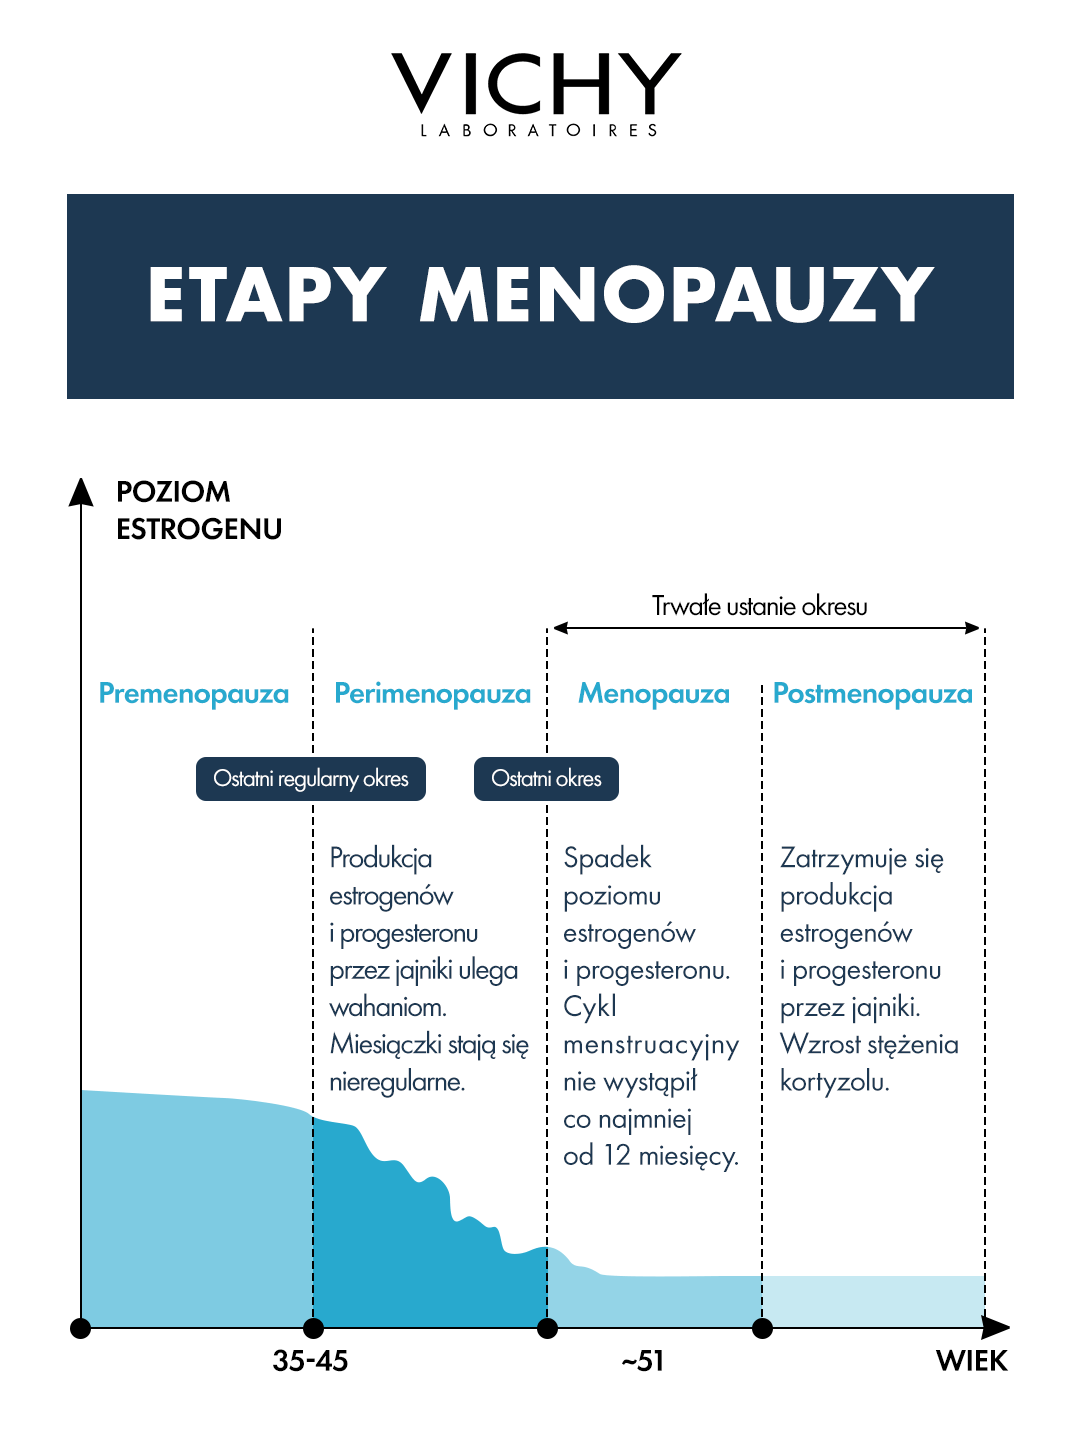 Wszystko co powinieneś wiedzieć o menopauzie, sprawdź etapy menopauzy Vichy Laboratoires